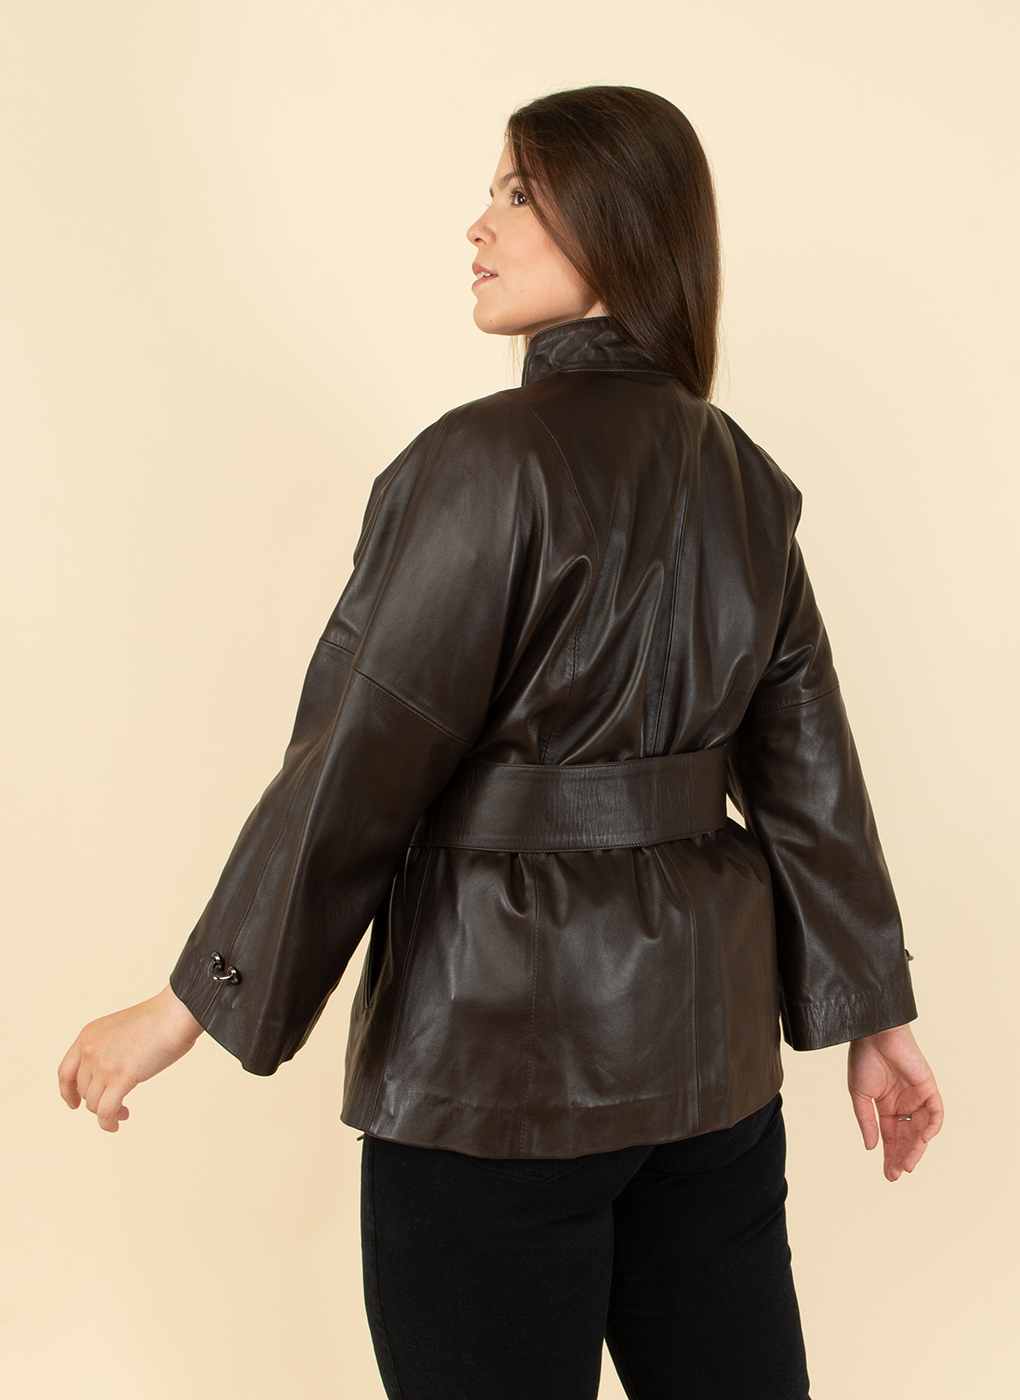 Кожаная куртка женская Каляев 53167 коричневая 56 RU